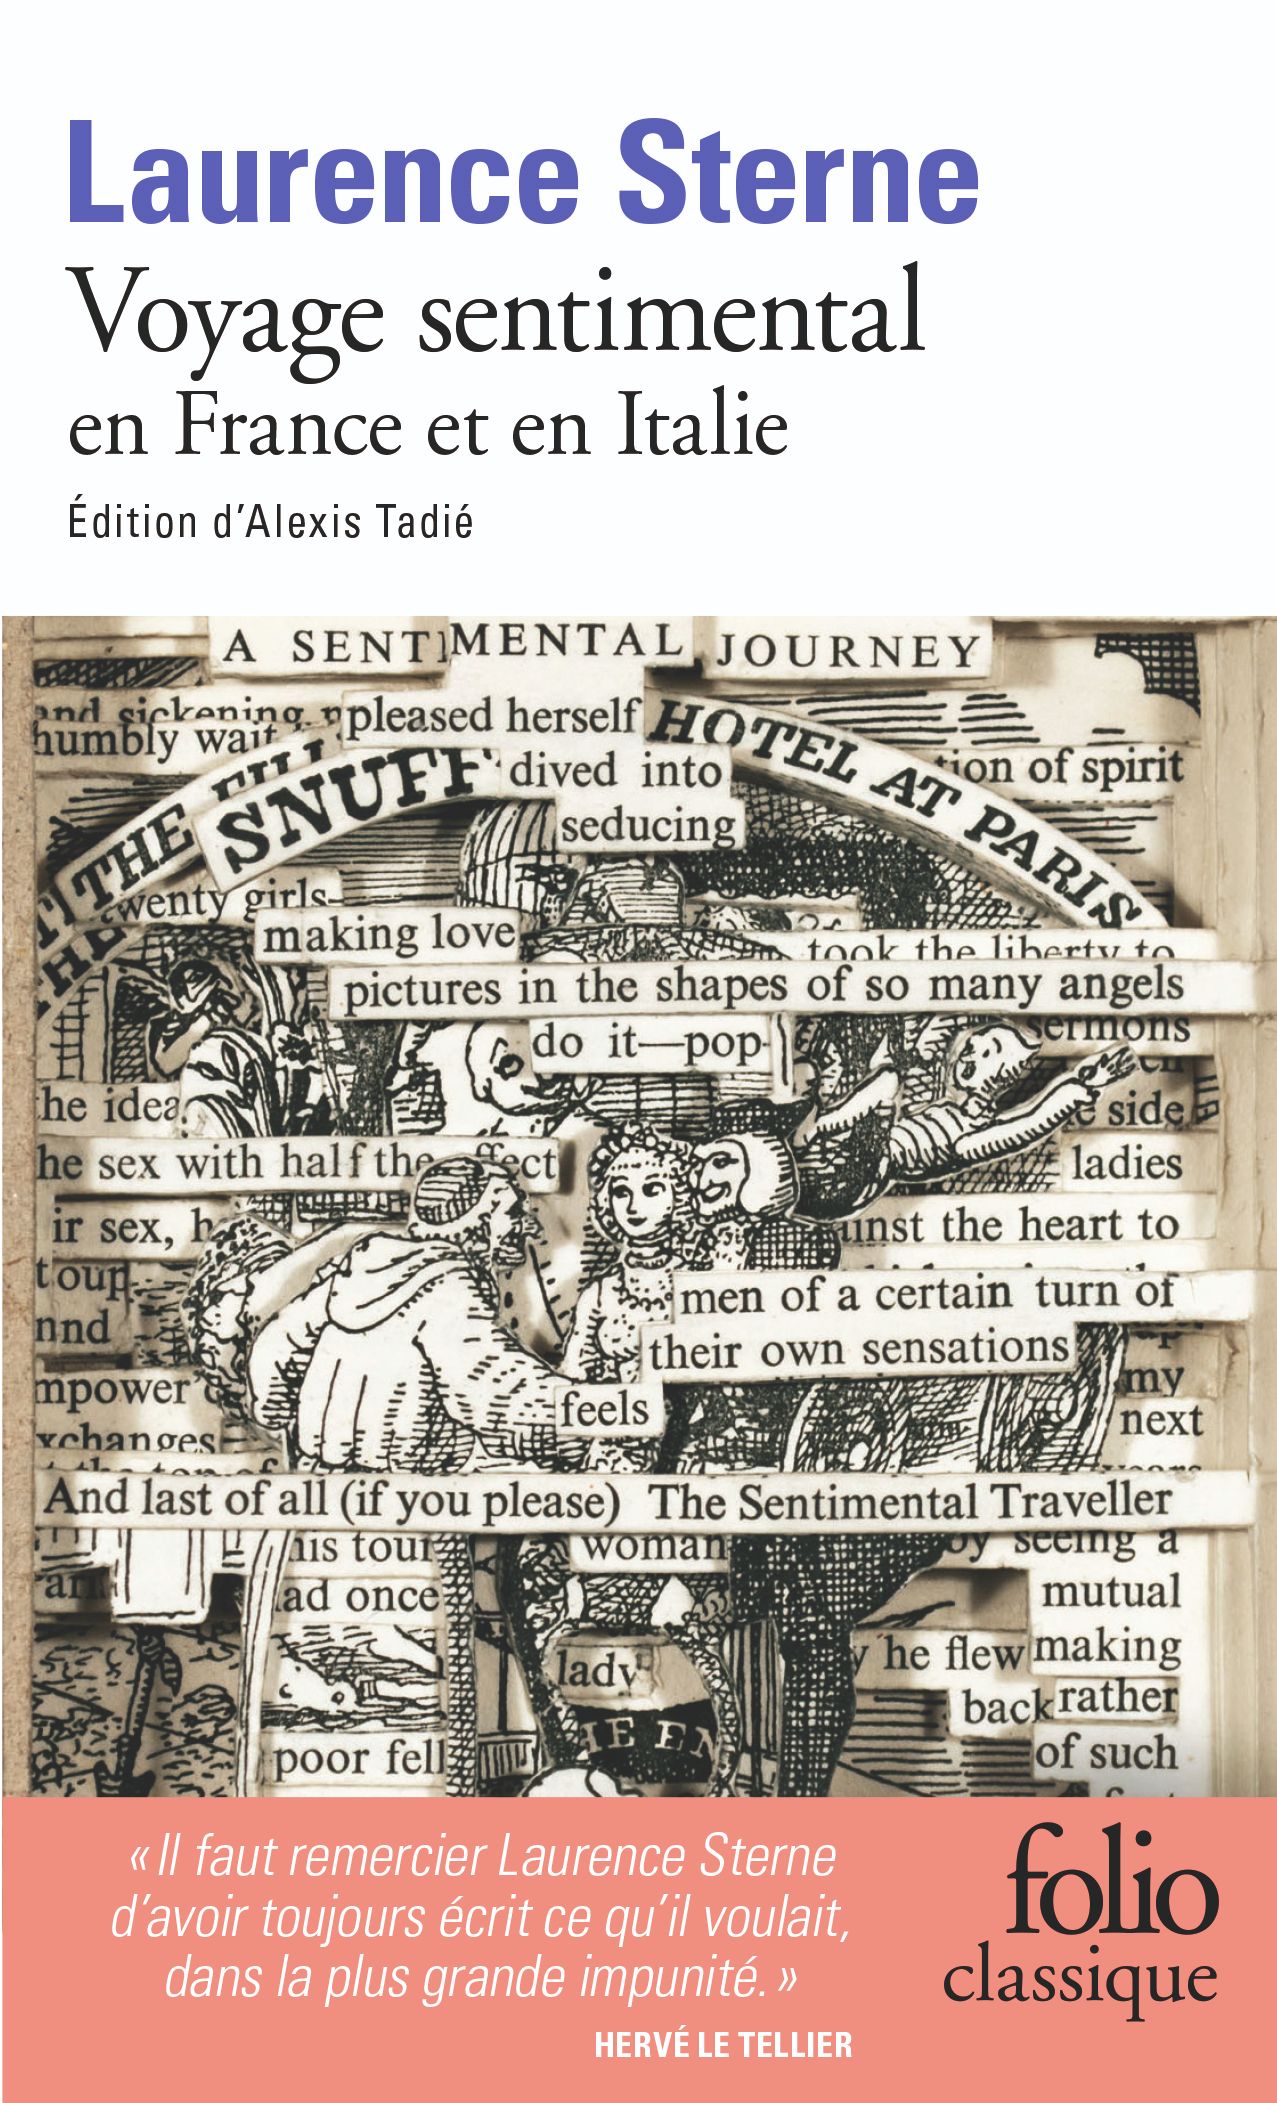 Laurence Sterne, Voyage sentimental en France et en Italie